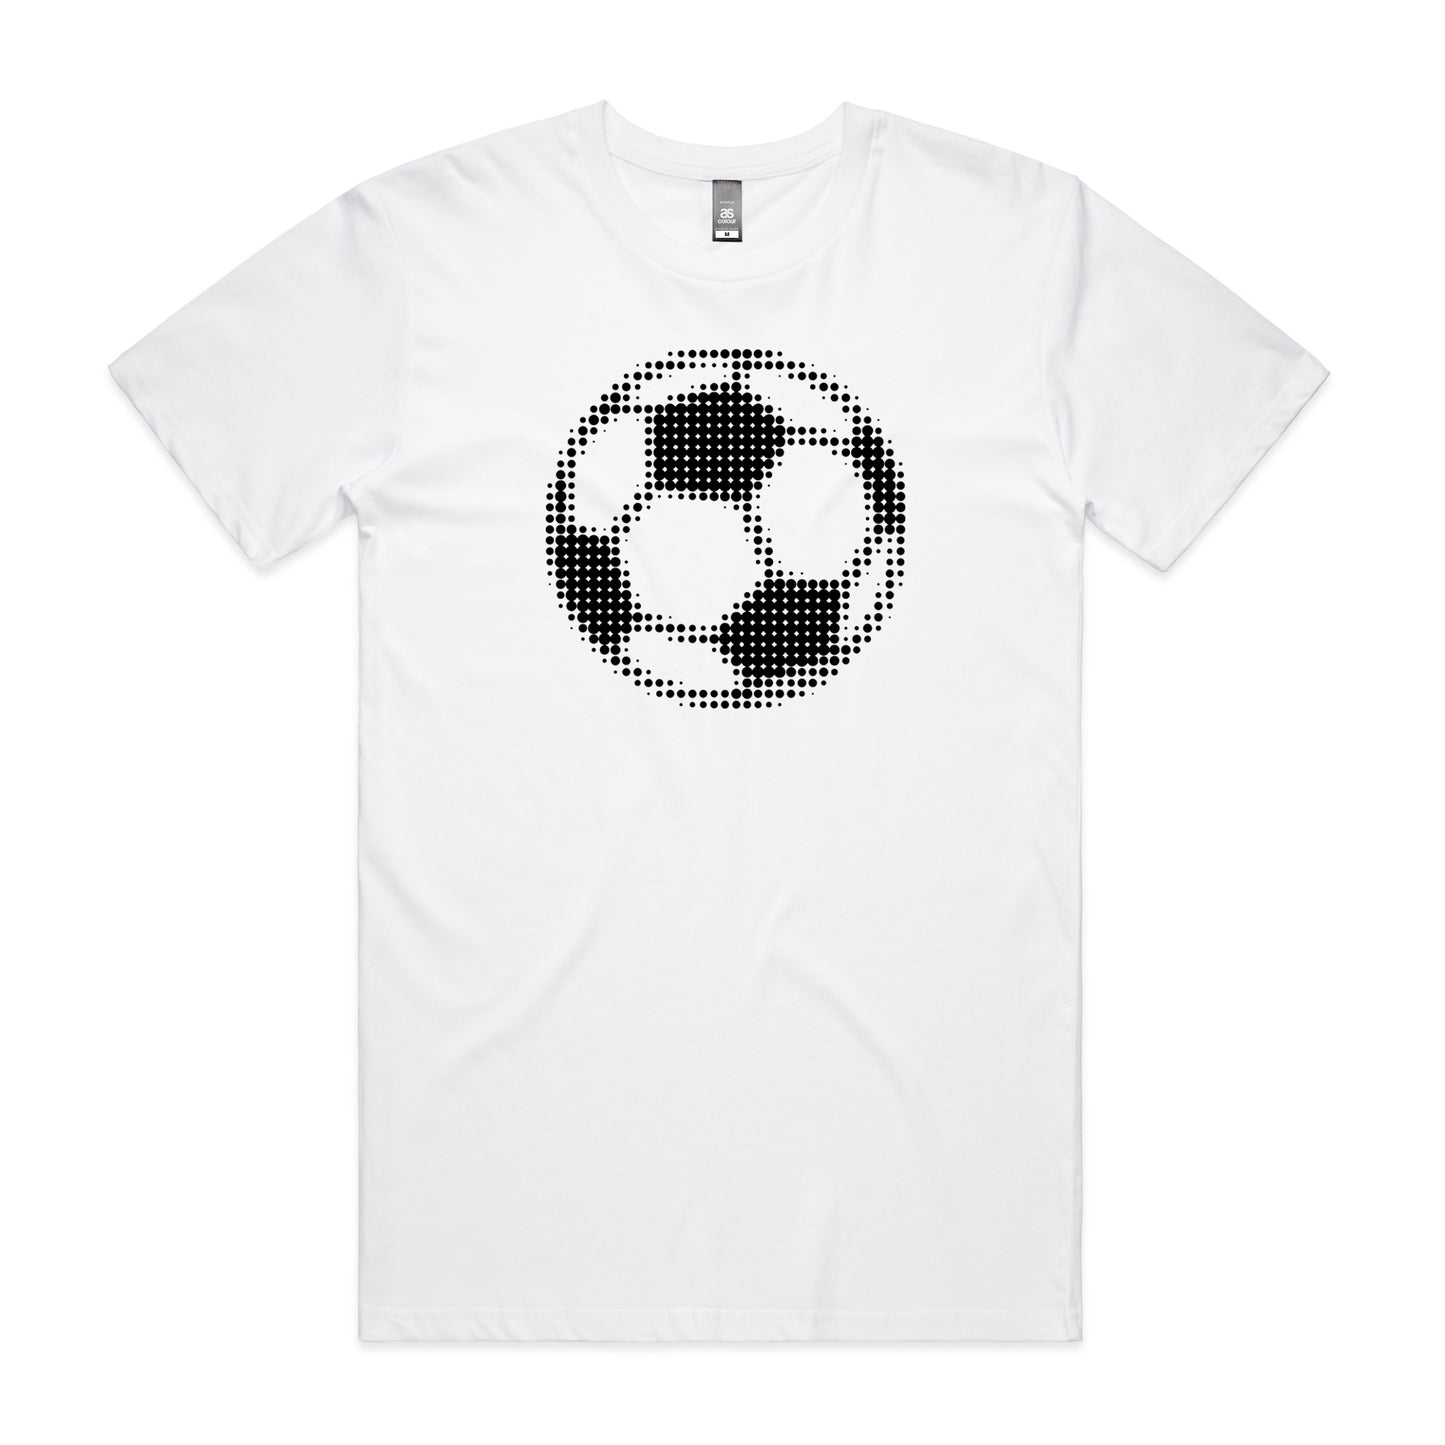 Football Vision T-shirt